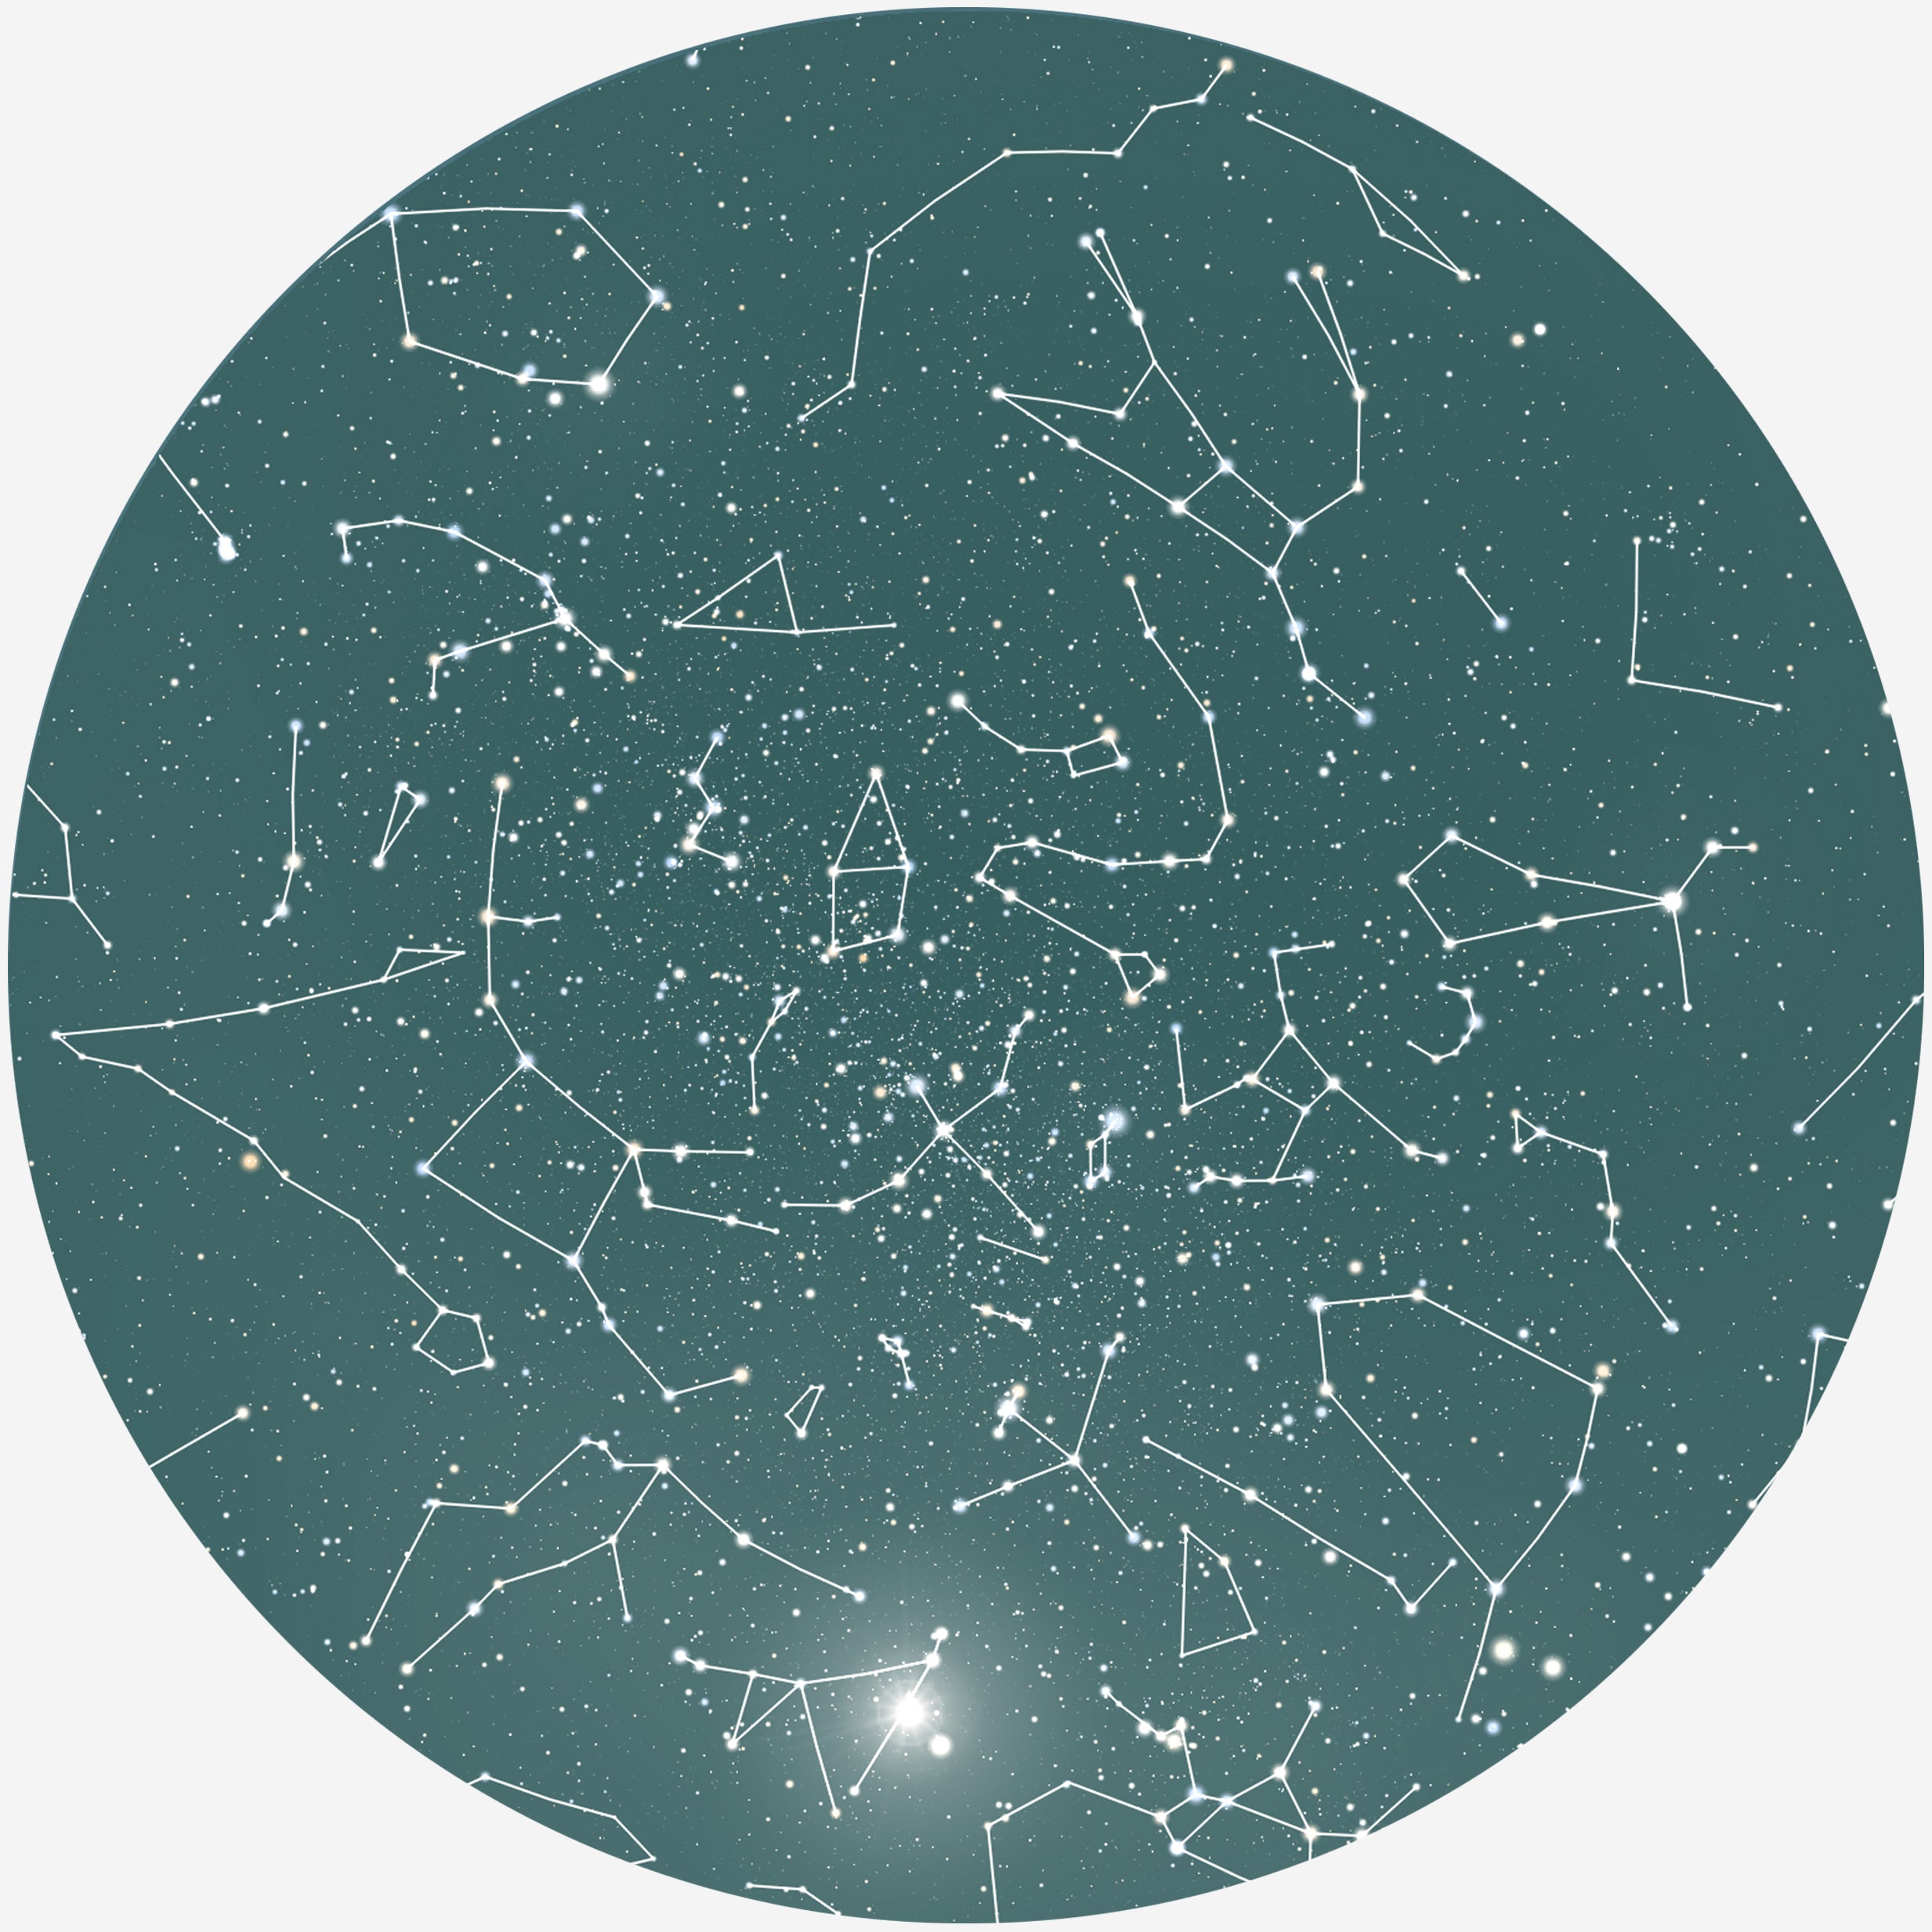 Billede af RUND PLAKAT MED PERSONLIG STJERNEHIMMEL (MØRKEGRØN) - 20 cm / Stjernehimmel med stjernebilleder